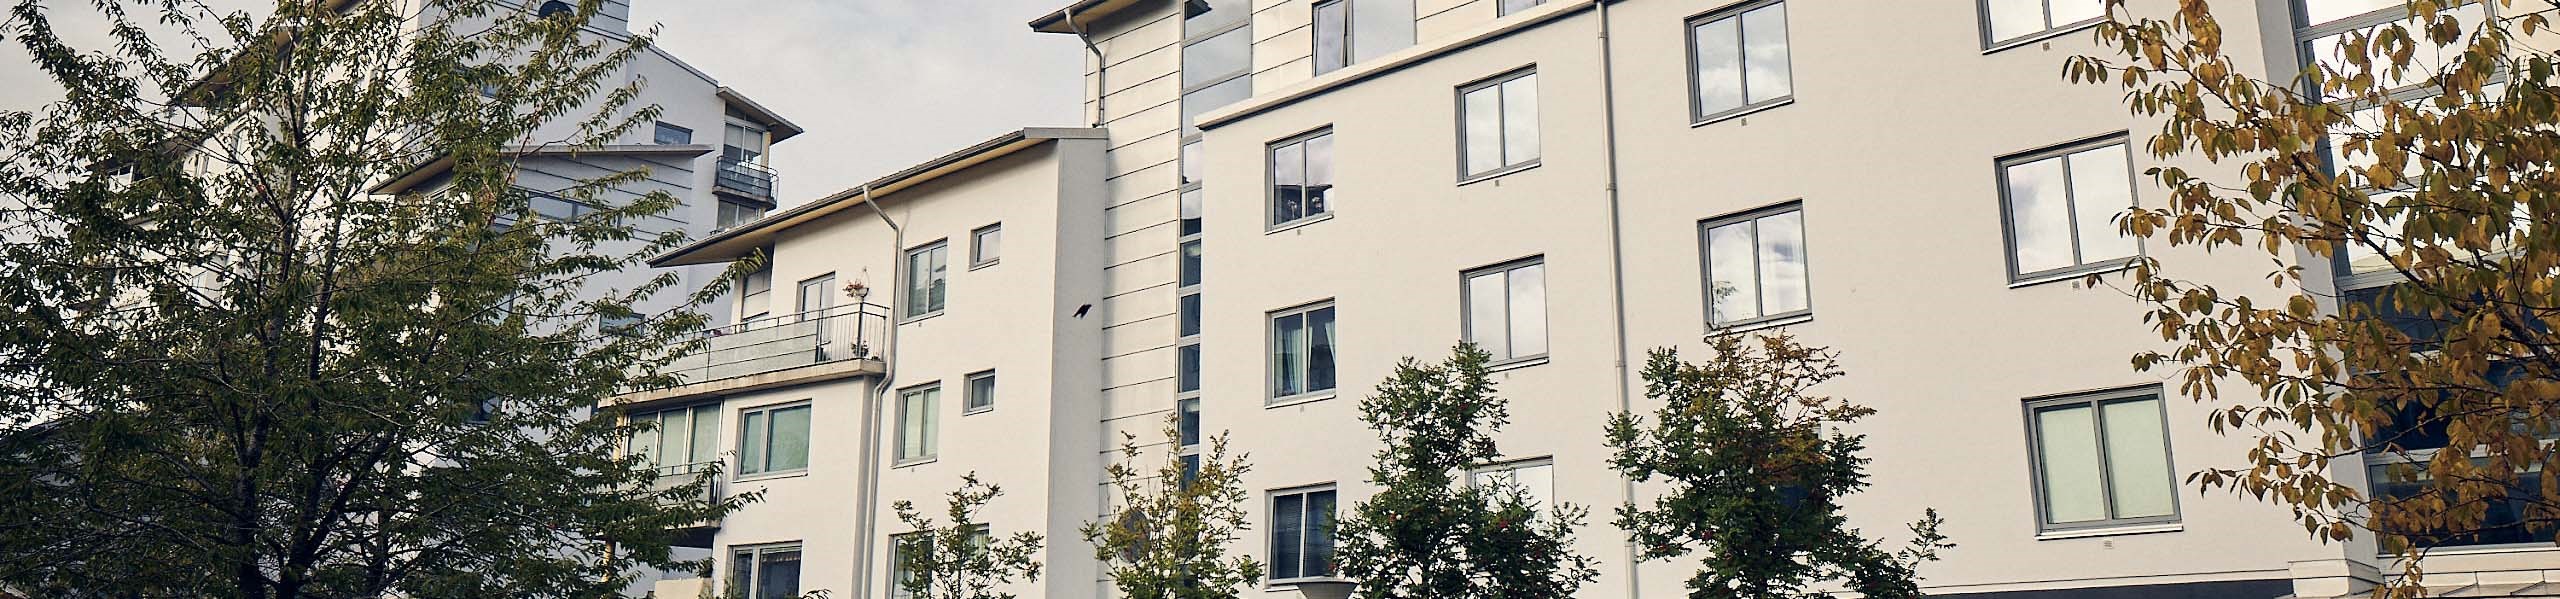 Ett flerfamiljshus med vit putsad fasad och träd i förgrunden